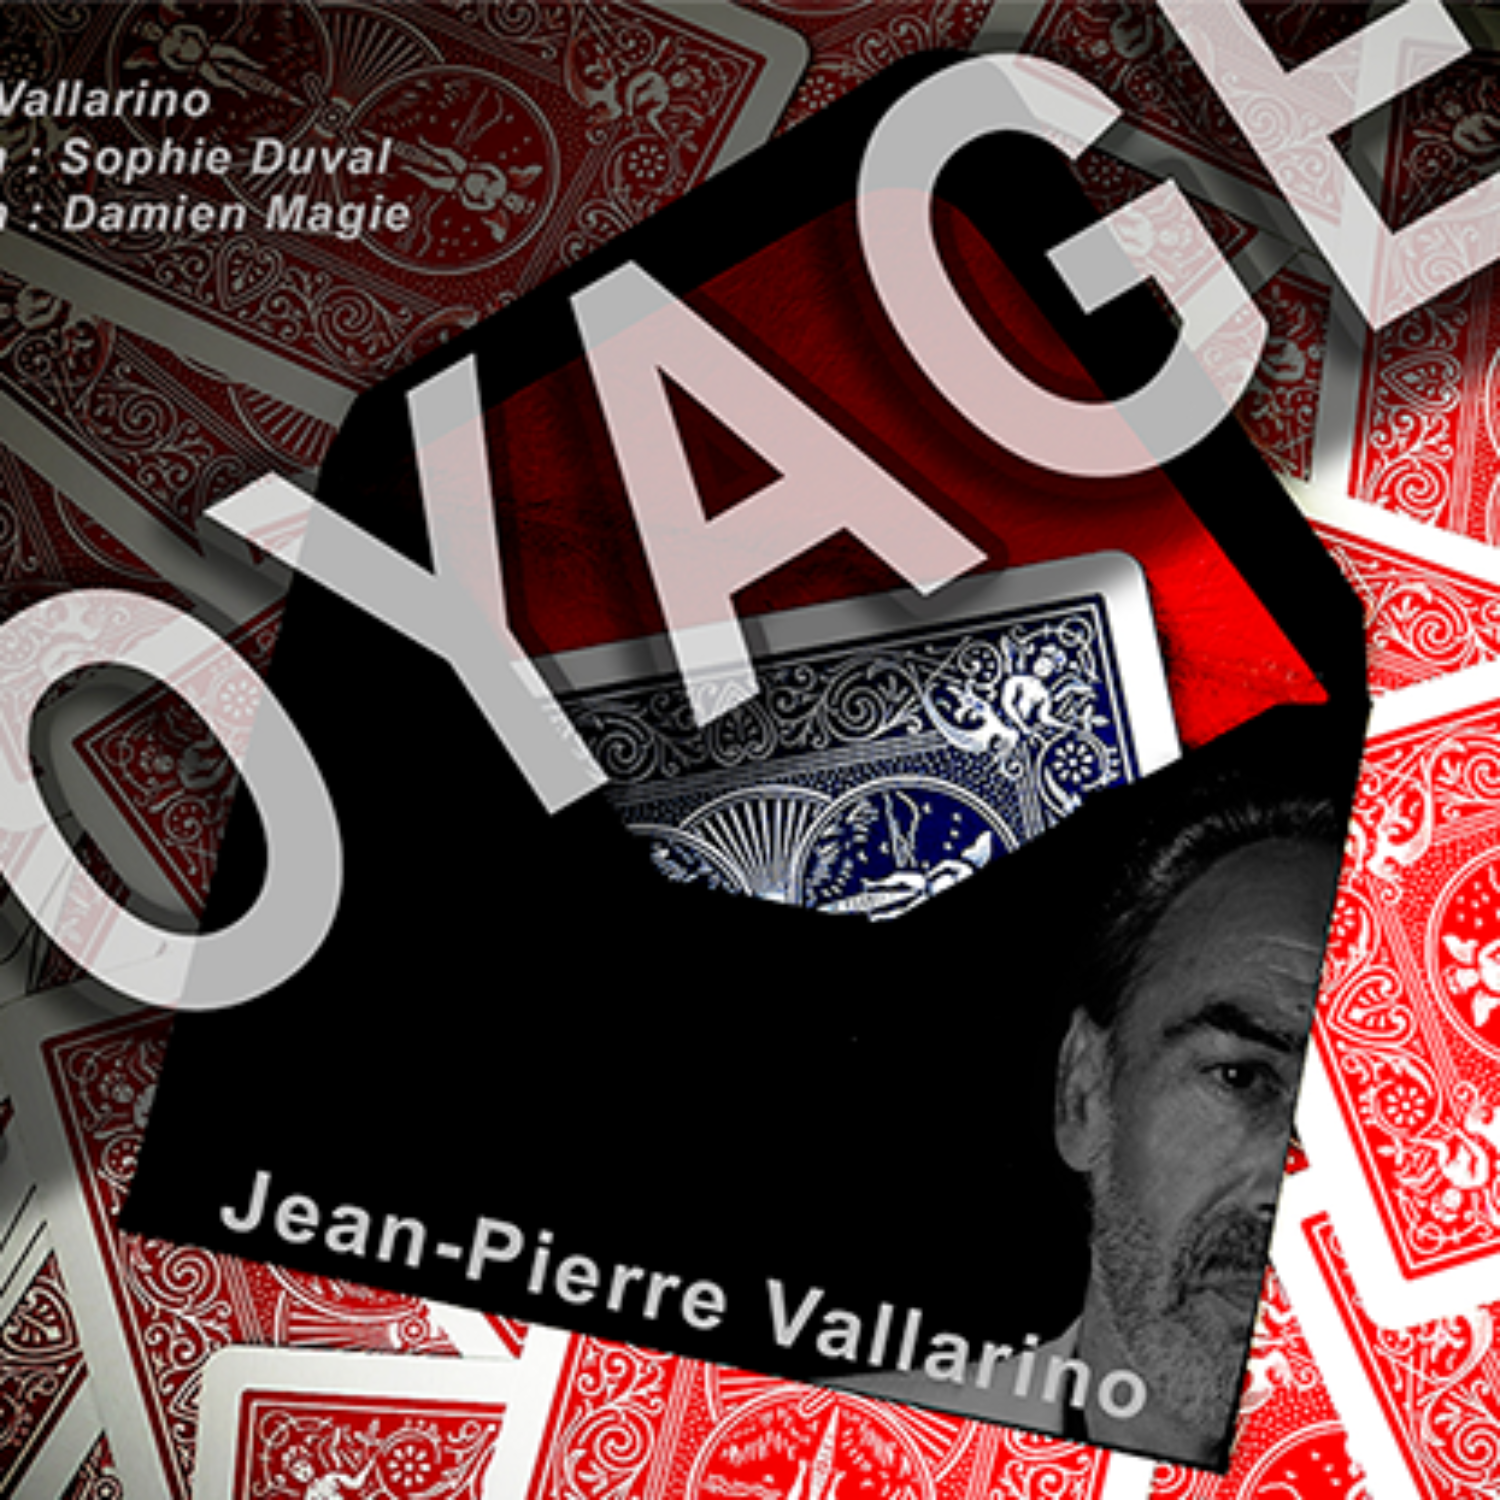 [보예지] VOYAGE Red by Jean-Pierre Vallarino 싸인한 카드의 놀라운 순간이동!!